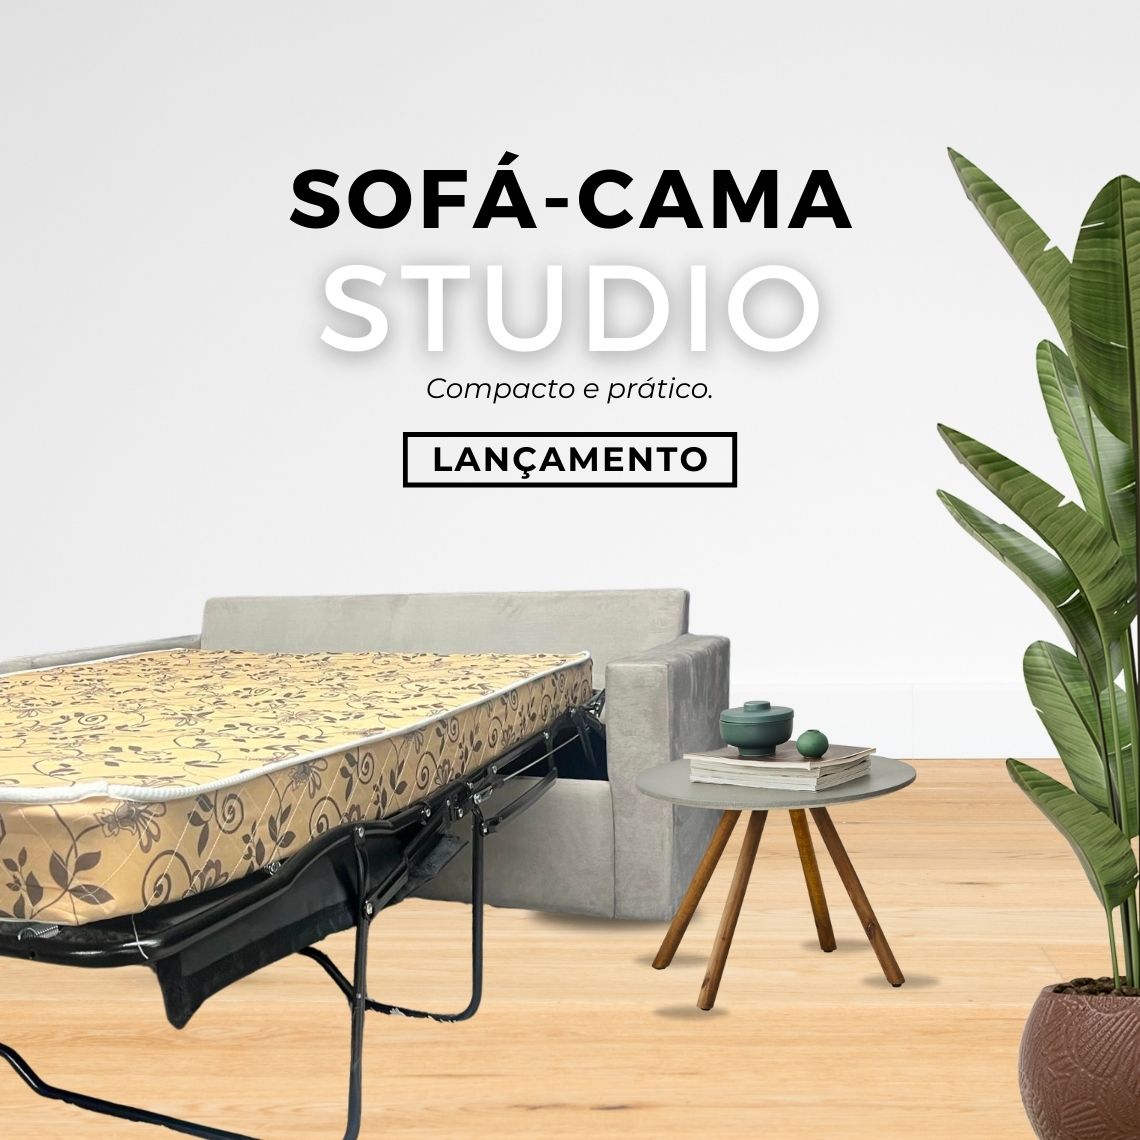 Sofá-Cama Studio - mobile